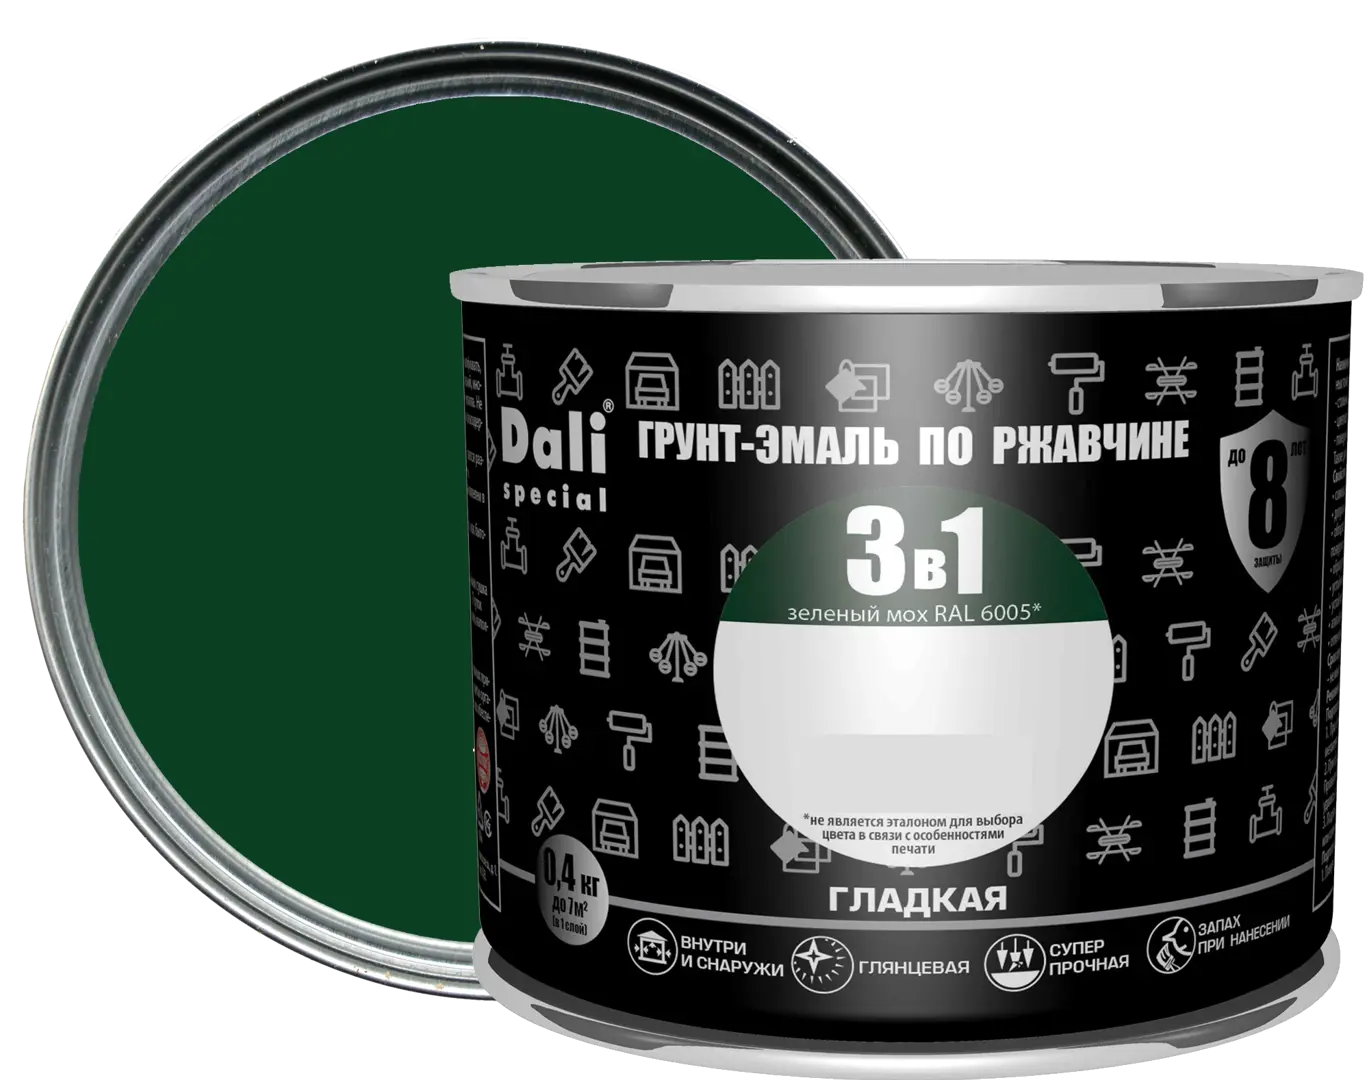 грунт эмаль по ржавчине 3в1 empils гладкая зелёный 5 кг Грунт-эмаль по ржавчине 3 в 1 Dali Special гладкая цвет зелёный мох 0.4 кг RAL 6005